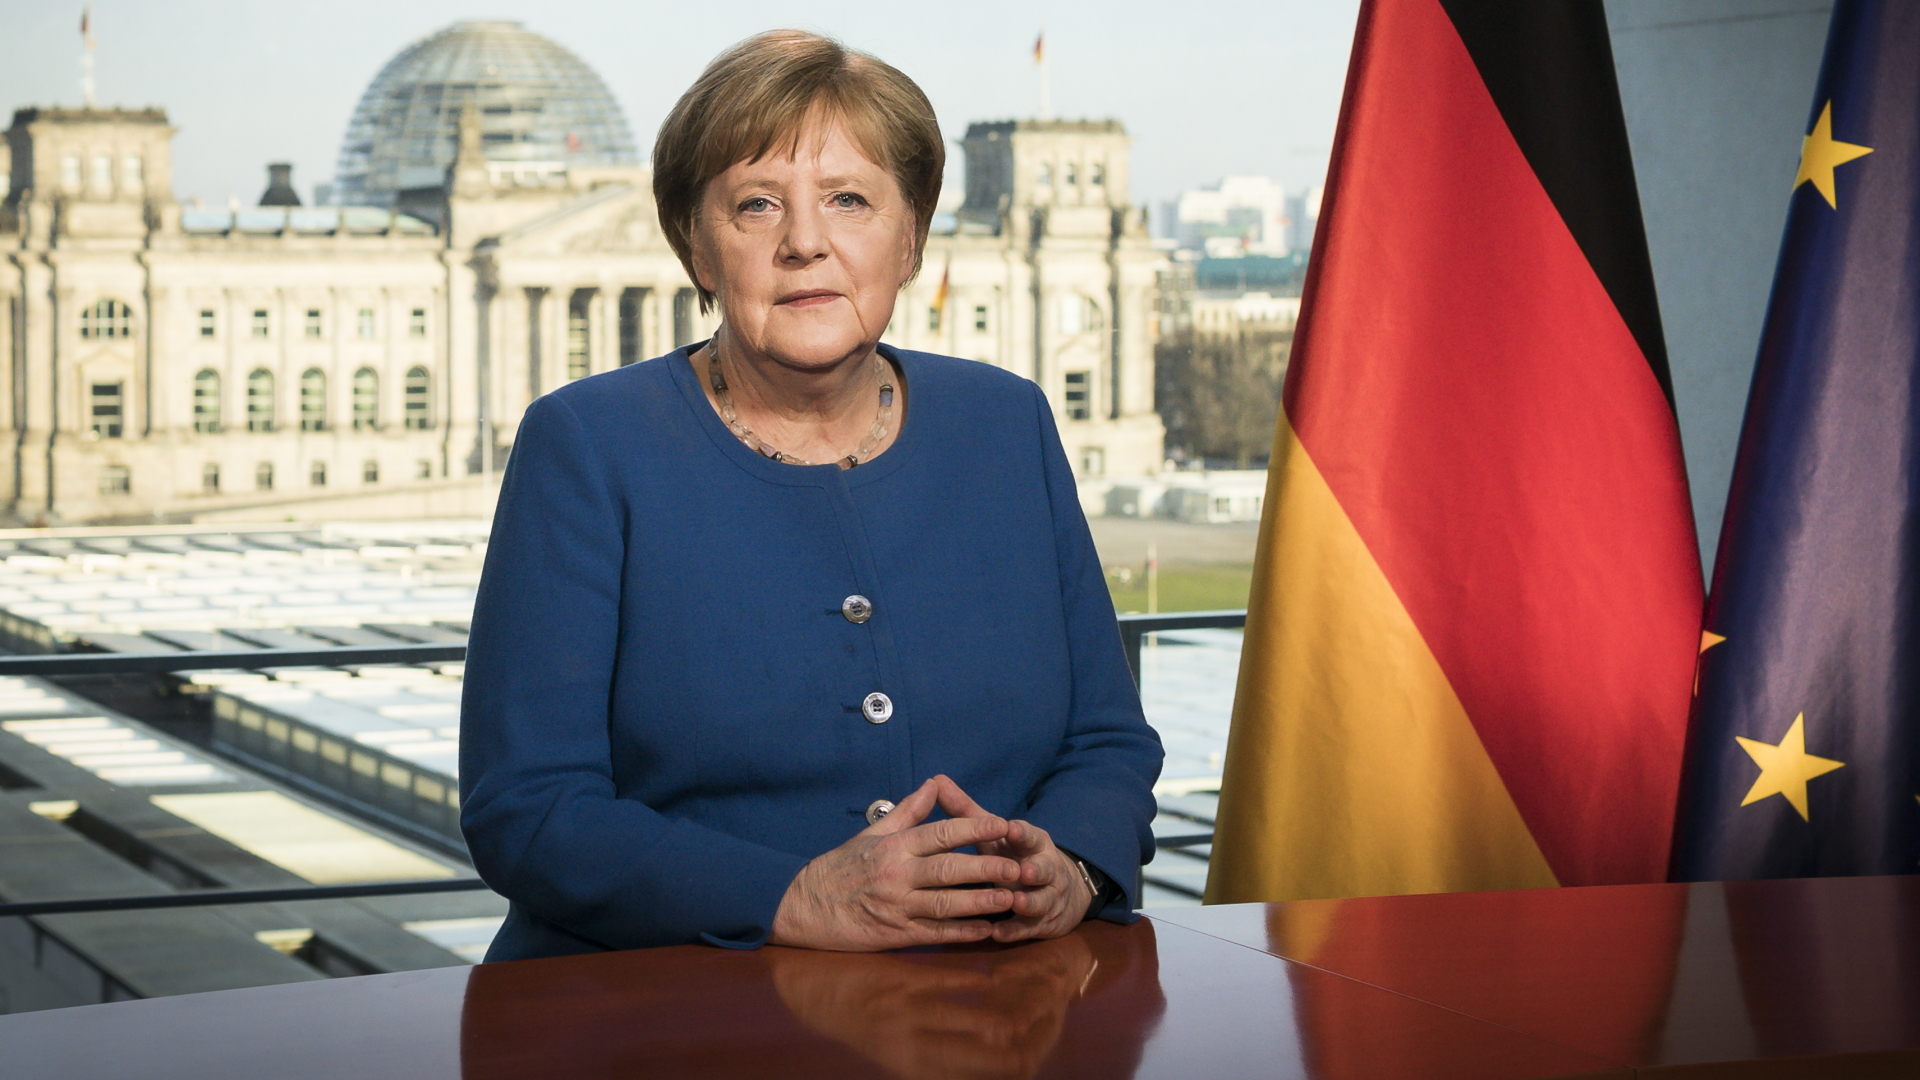 Bundeskanzlerin Angela Merkel (CDU) aufgenommen bei der Aufzeichnung einer Fernsehansprache im Bundeskanzleramt. | Bildquelle: dpa